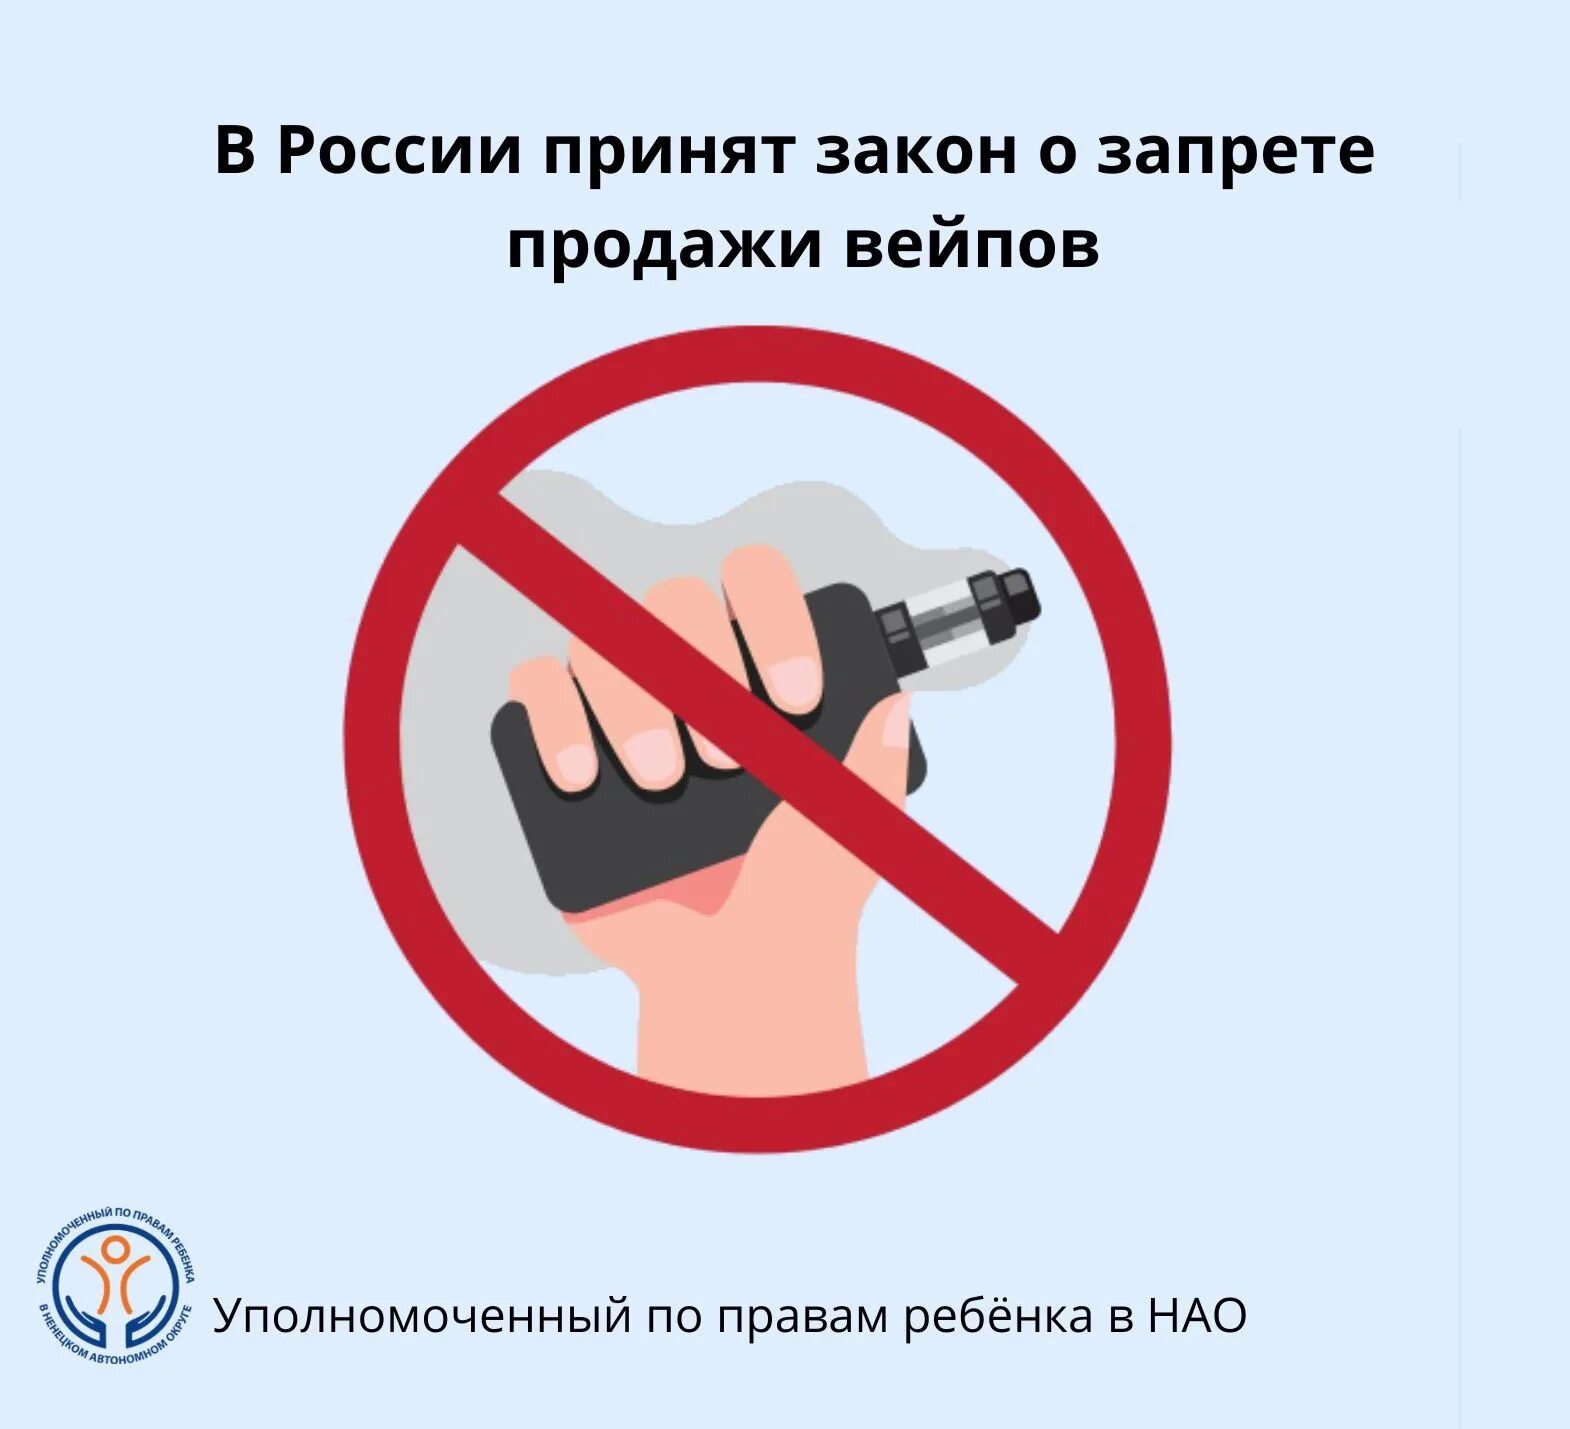 Закон о запрете вейпов в россии. Запрет вейпов. Электронные сигареты запрещены. Курение электронных сигарет запрещено. Закон о запрете вейпов.